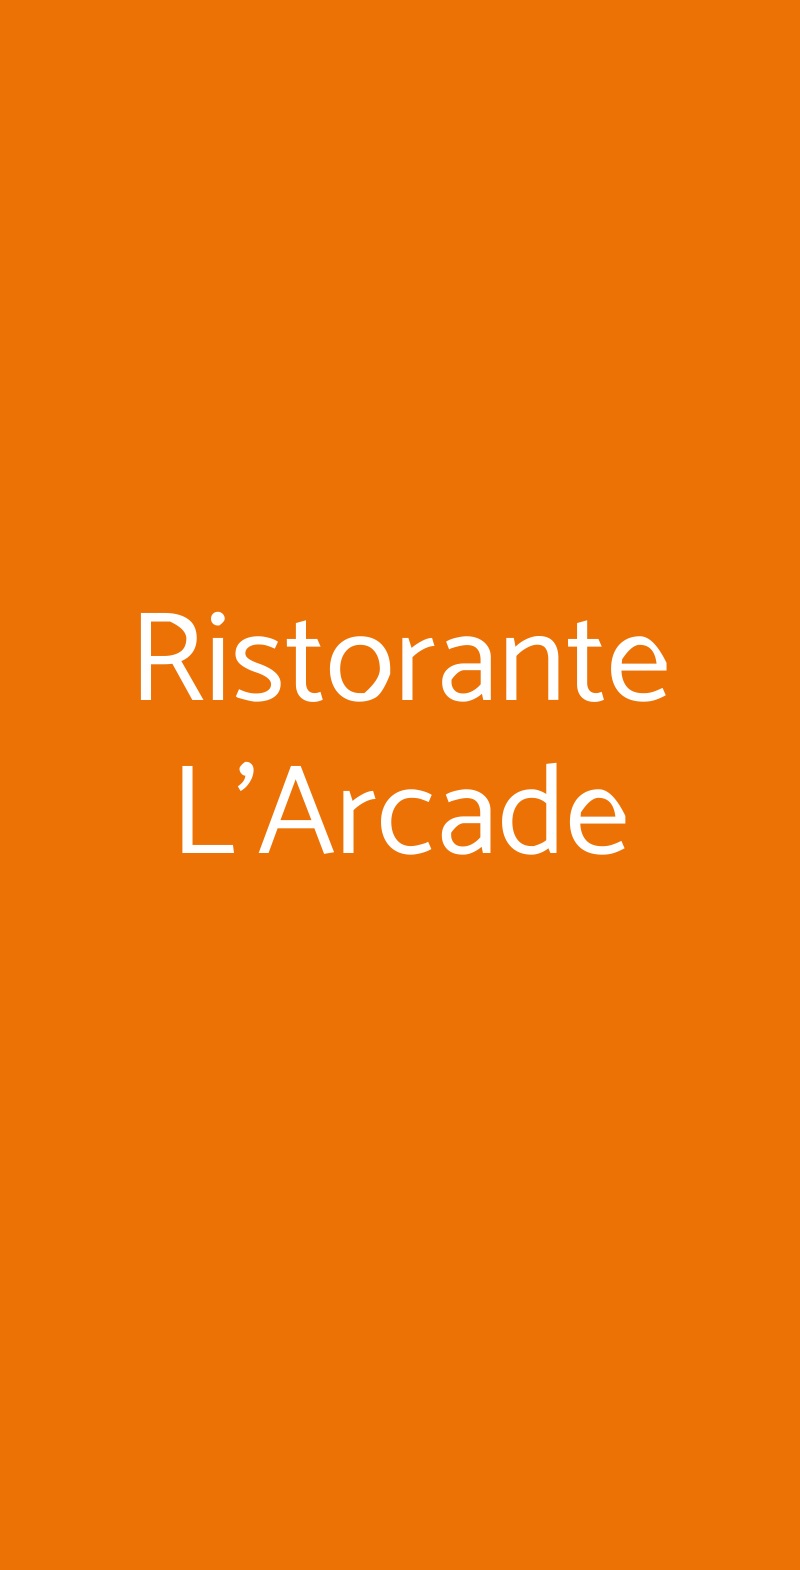 Ristorante L'Arcade Porto San Giorgio menù 1 pagina